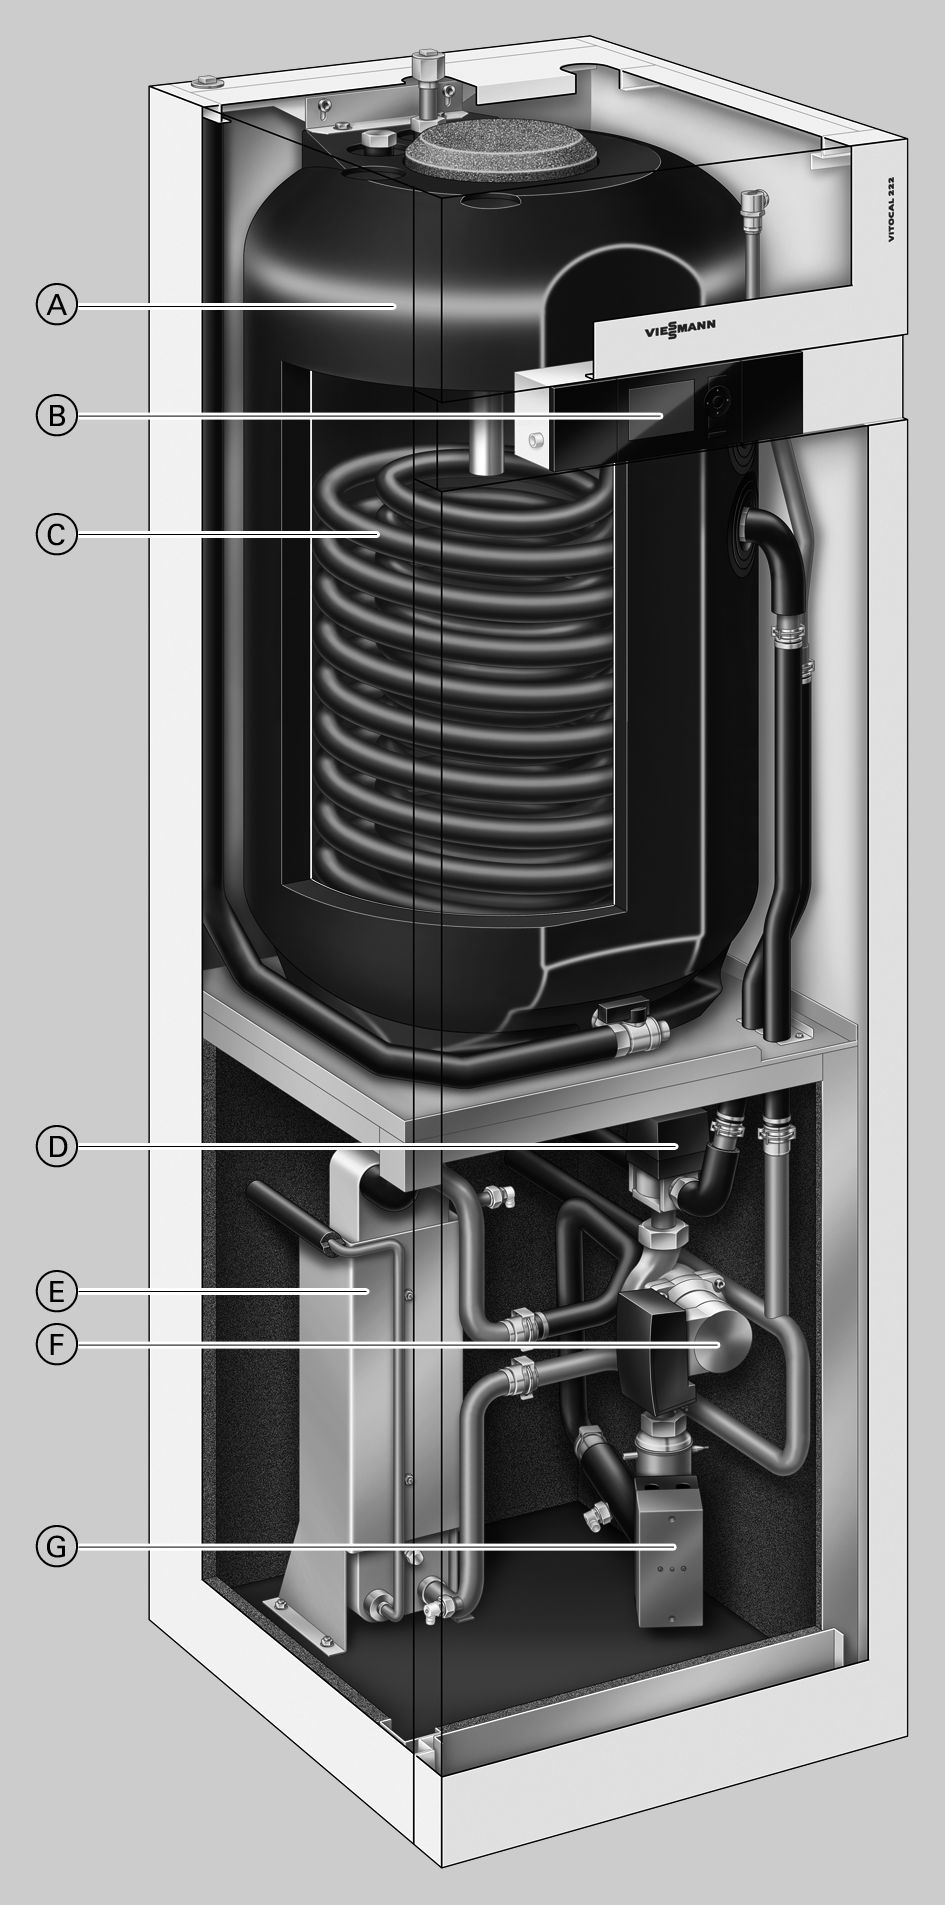 Vorteile Inneneinheit A Speicher-Wassererwärmer mit 170 Litern Inhalt B Wärmepumpenregelung Vitotronic 200 C Innenliegender Wärmetauscher zur Speicherbeheizung D 3-Wege-Umschaltventil